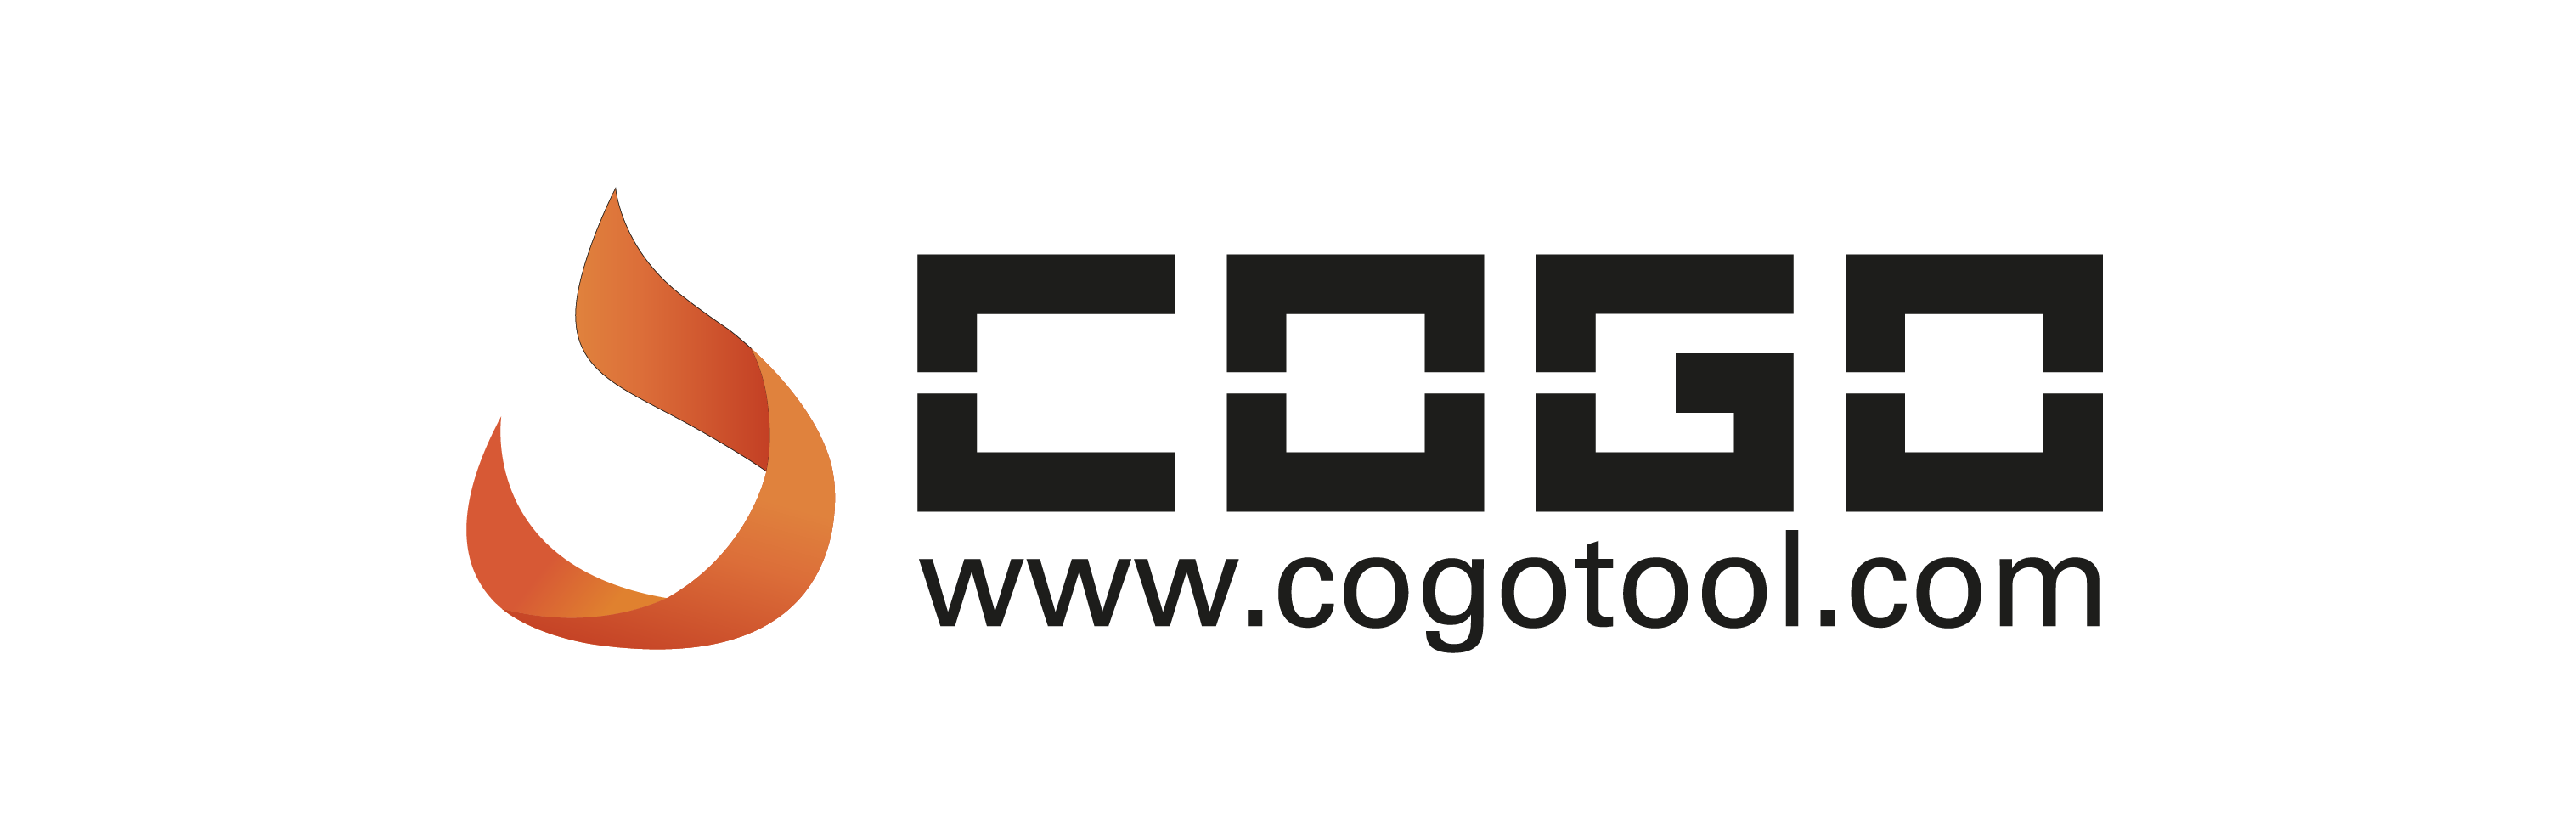 Cogo Tool Logo